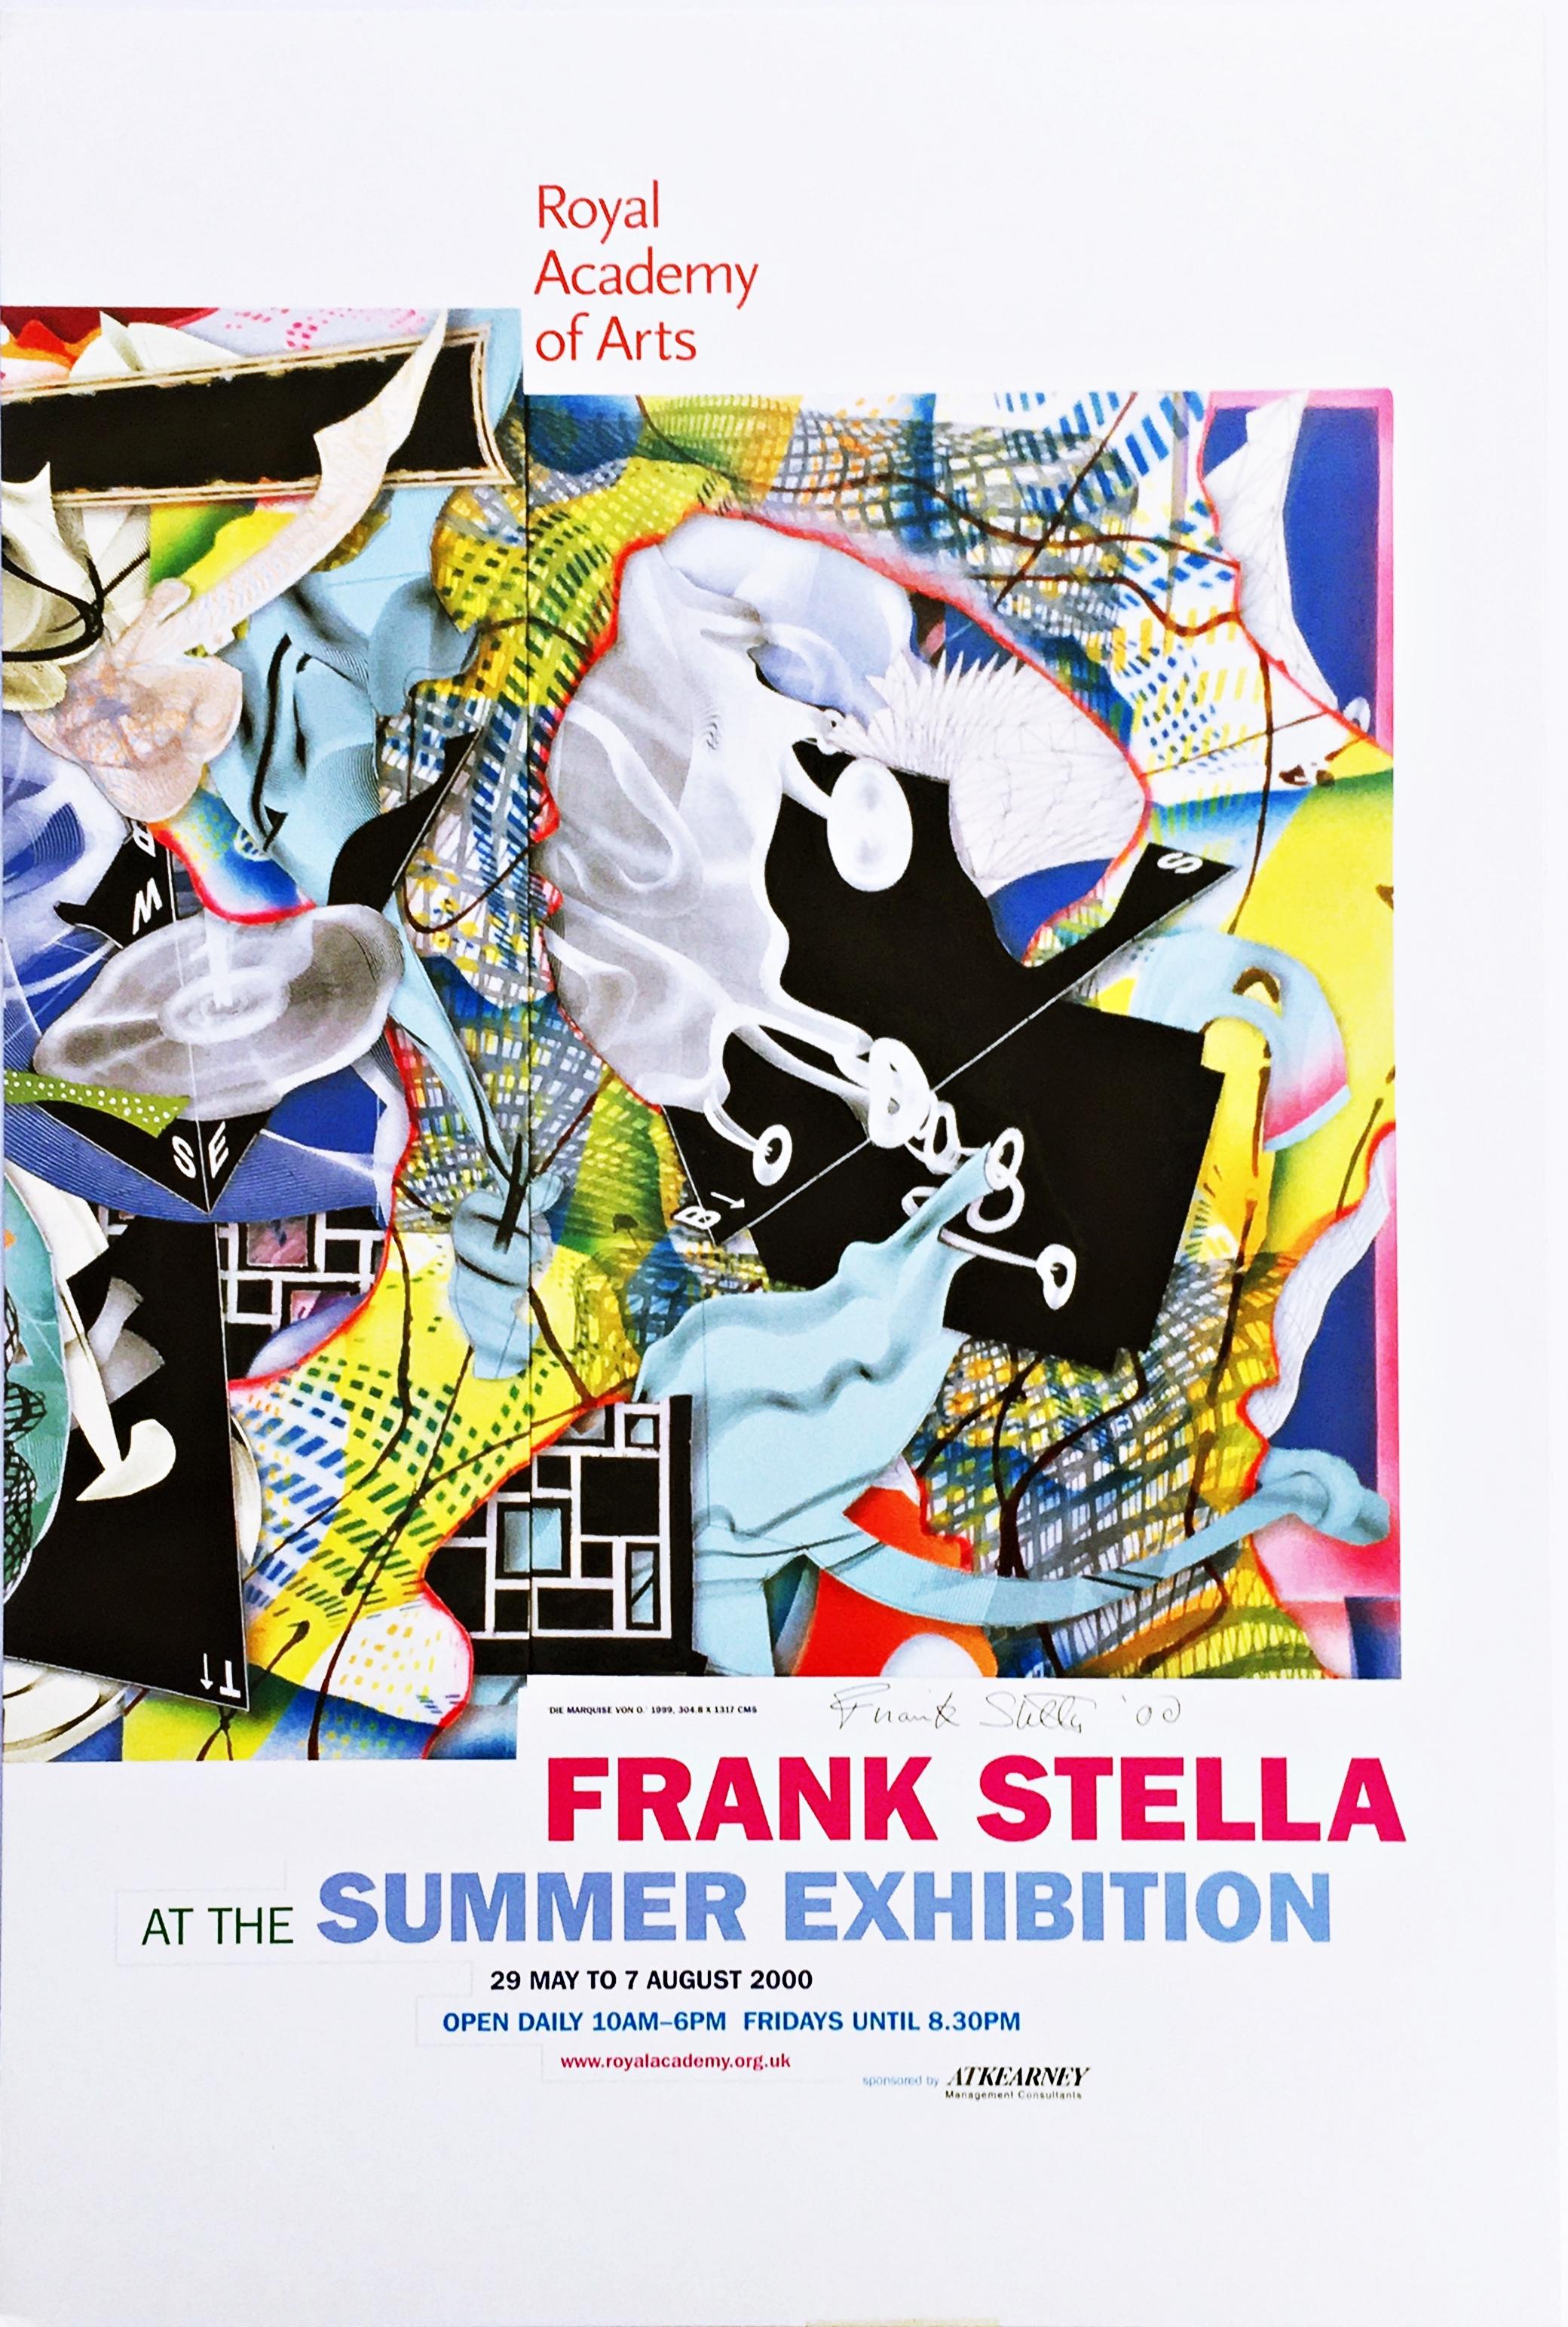 Frank Stella
Frank Stella, Royal Academy of Arts (signé à la main), 2000
Lithographie offset sur carton 
Signée et datée à la main par Frank Stella à l'encre au recto.
29 3/4 x 20 pouces
Non encadré
Cette affiche de Frank Stella a été publiée à